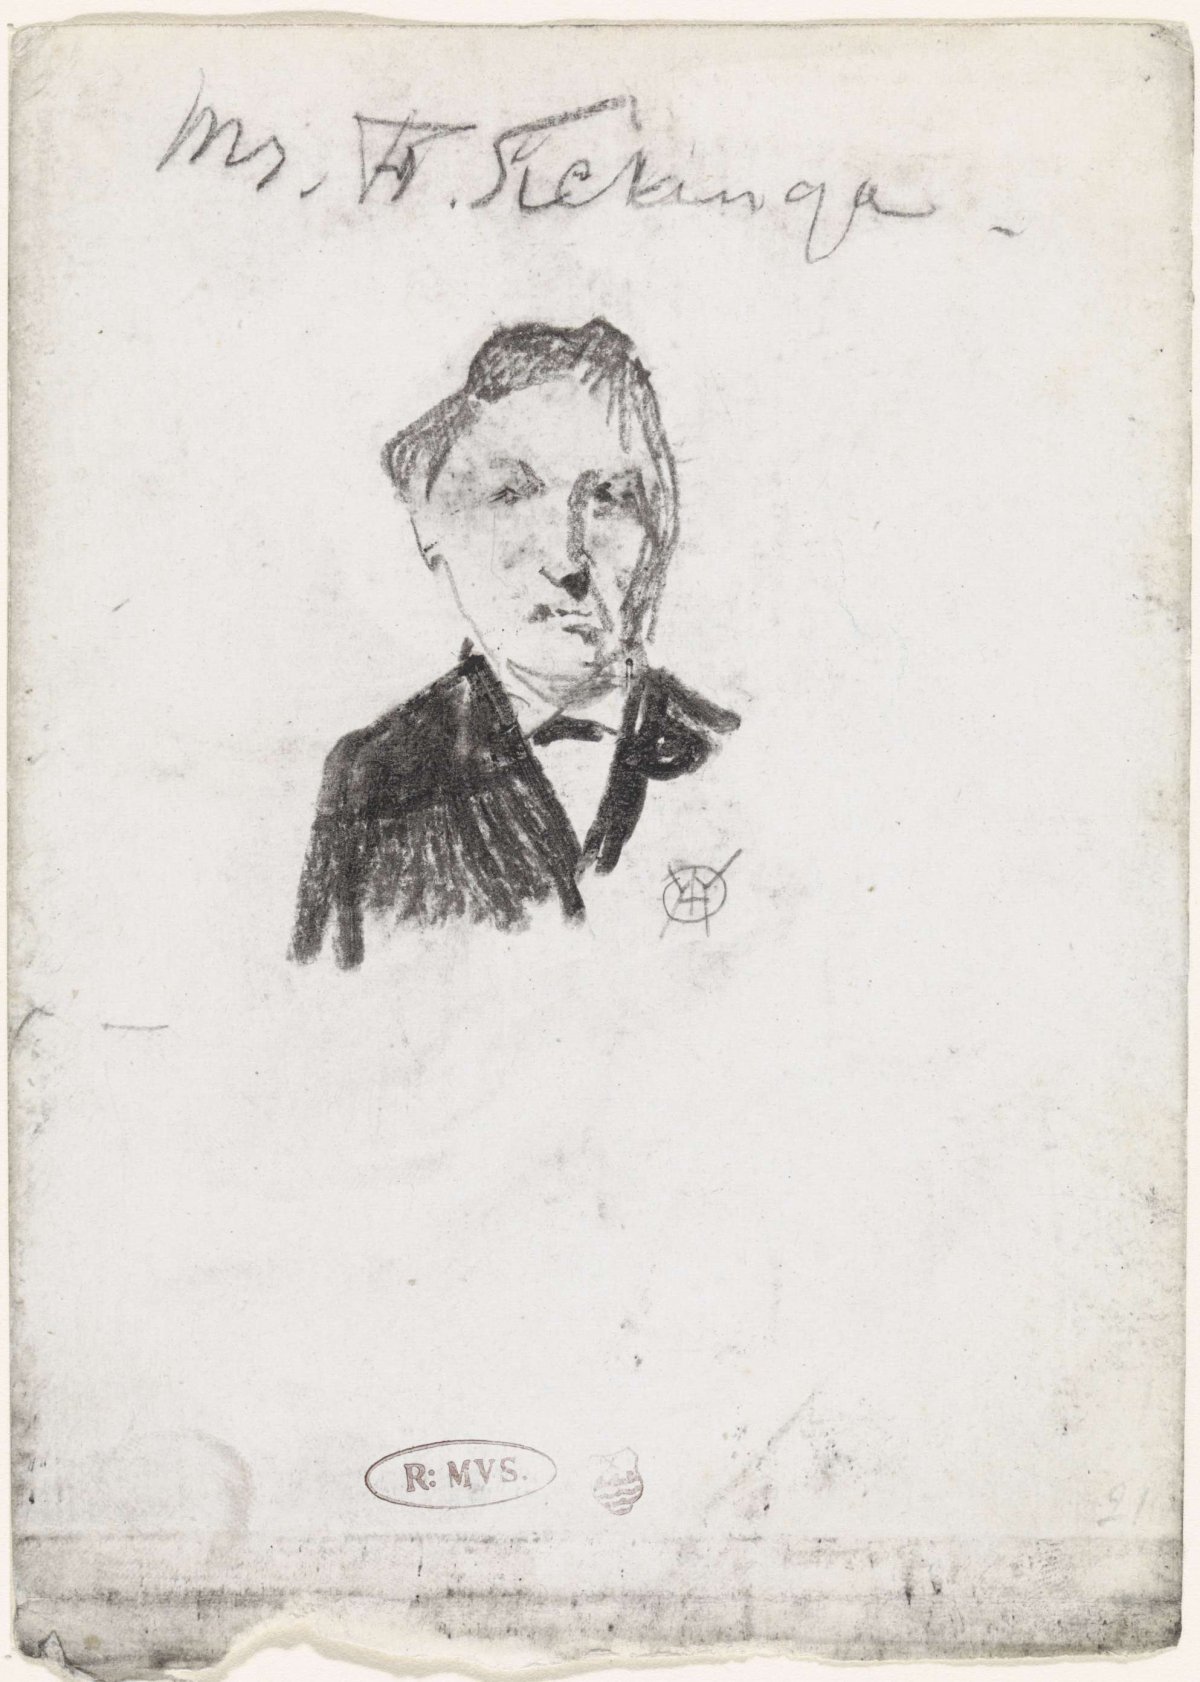 Portrait of Mr. F. Sickinga, Gerrit Willem Dijsselhof, 1876 - 1924